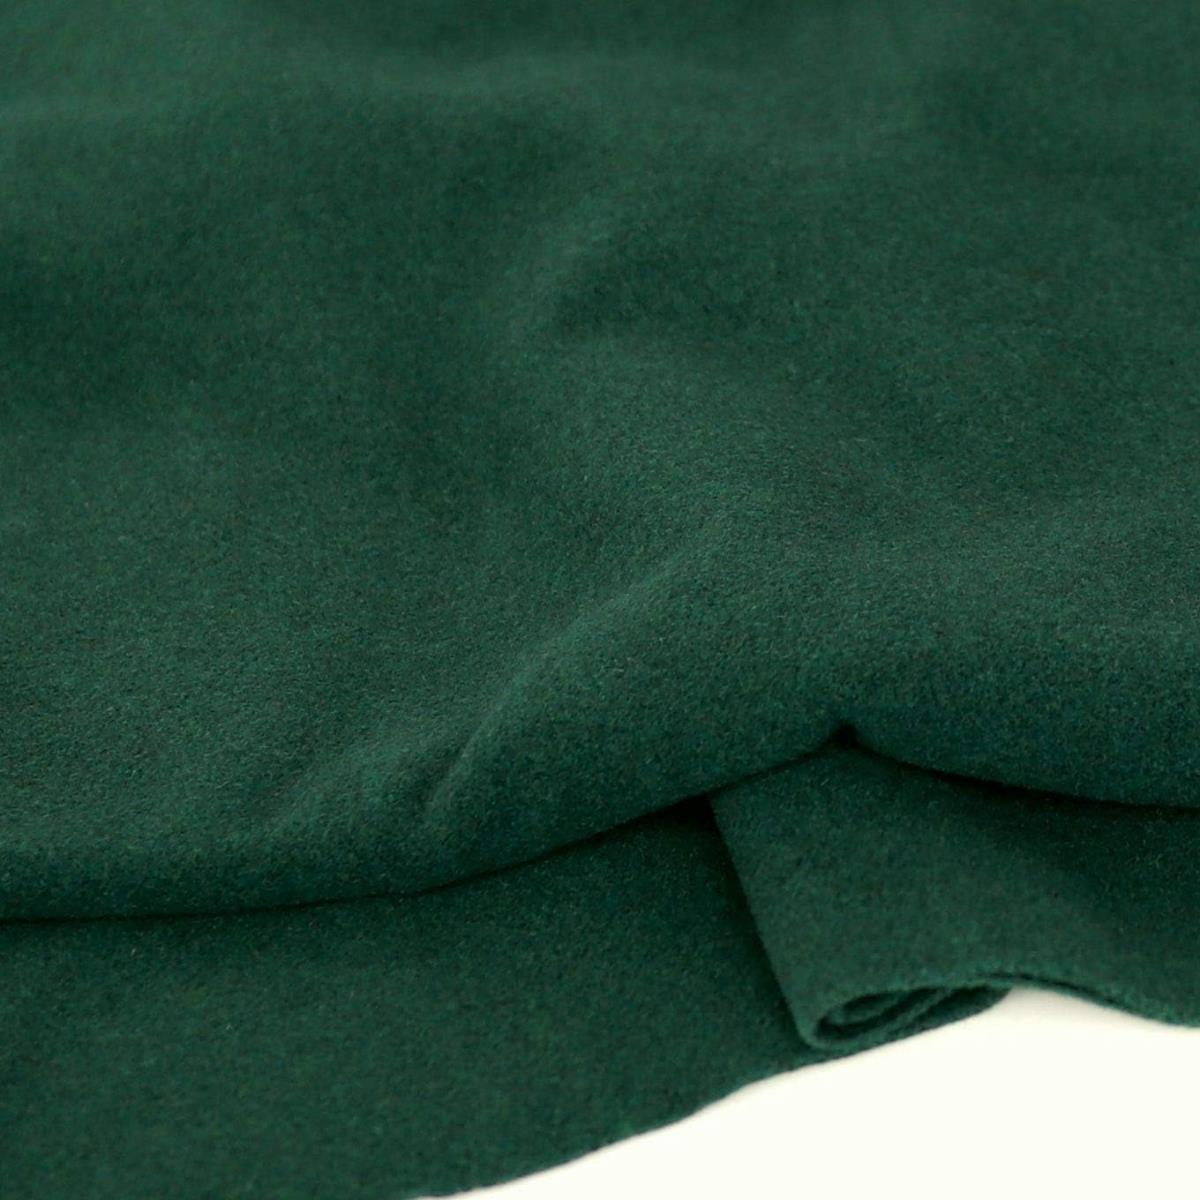 dicker warmer Winter Wollstoff für Mantel Jacke Decke - dunkel grün Wolltuch Meterware